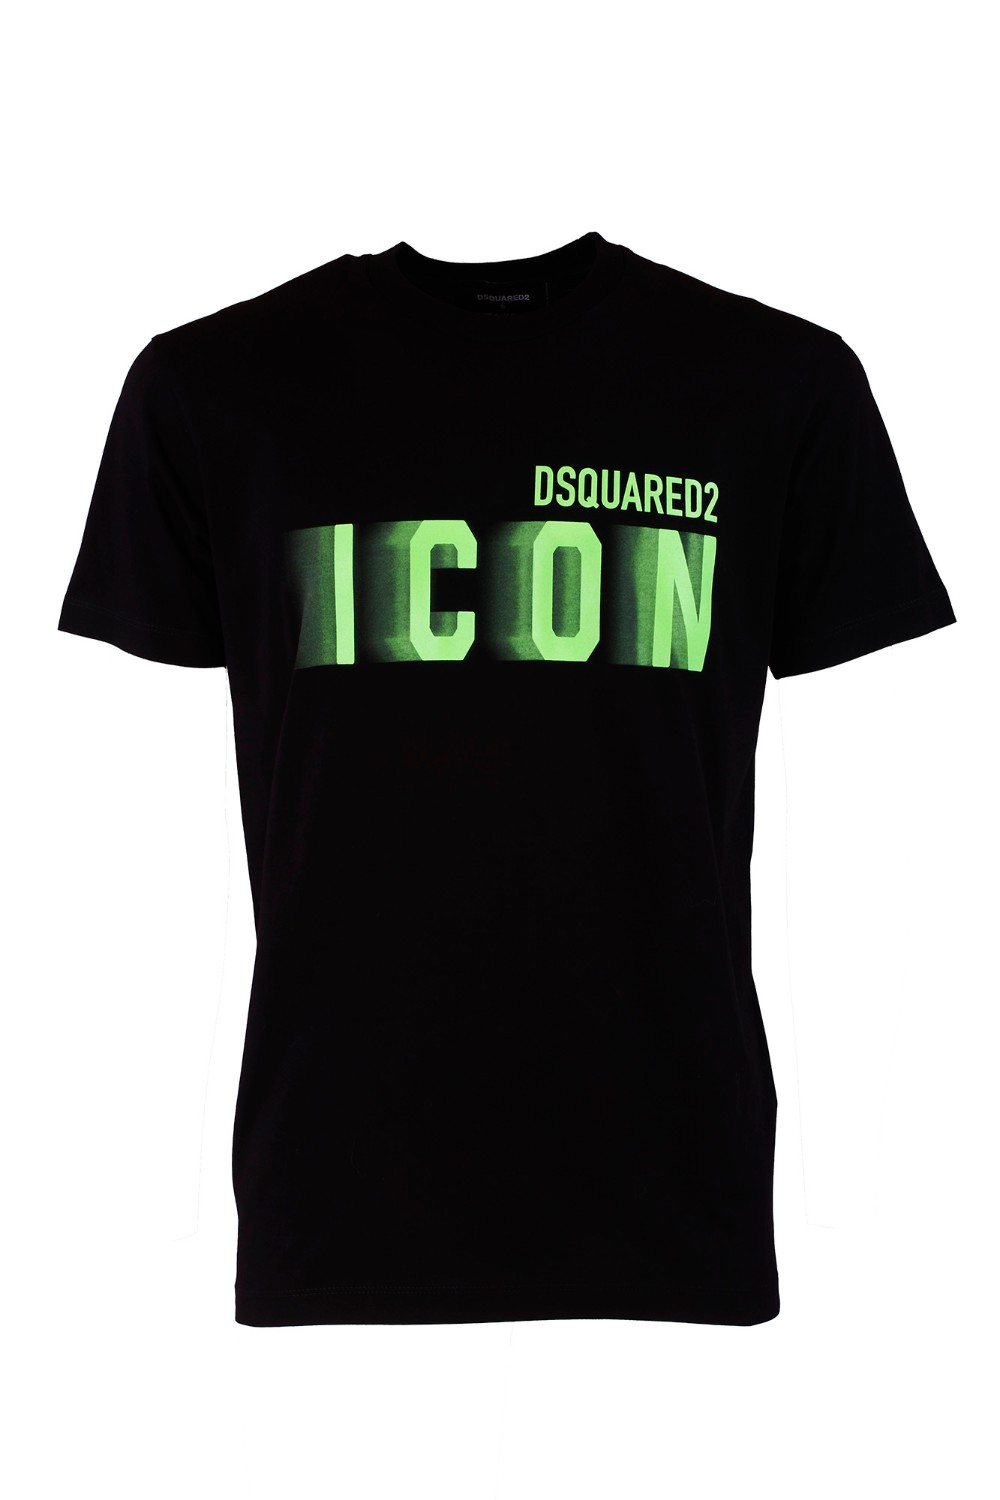 shop DSQUARED2 Saldi T-shirt: DSQUARED2 t-shirt "Icon".
Girocollo.
Maniche corte.
Vestibilità regolare.
Composizione: 100% Cotone.
Fabbricato in Romania.. S79GC0082 S23009-971X number 5527442